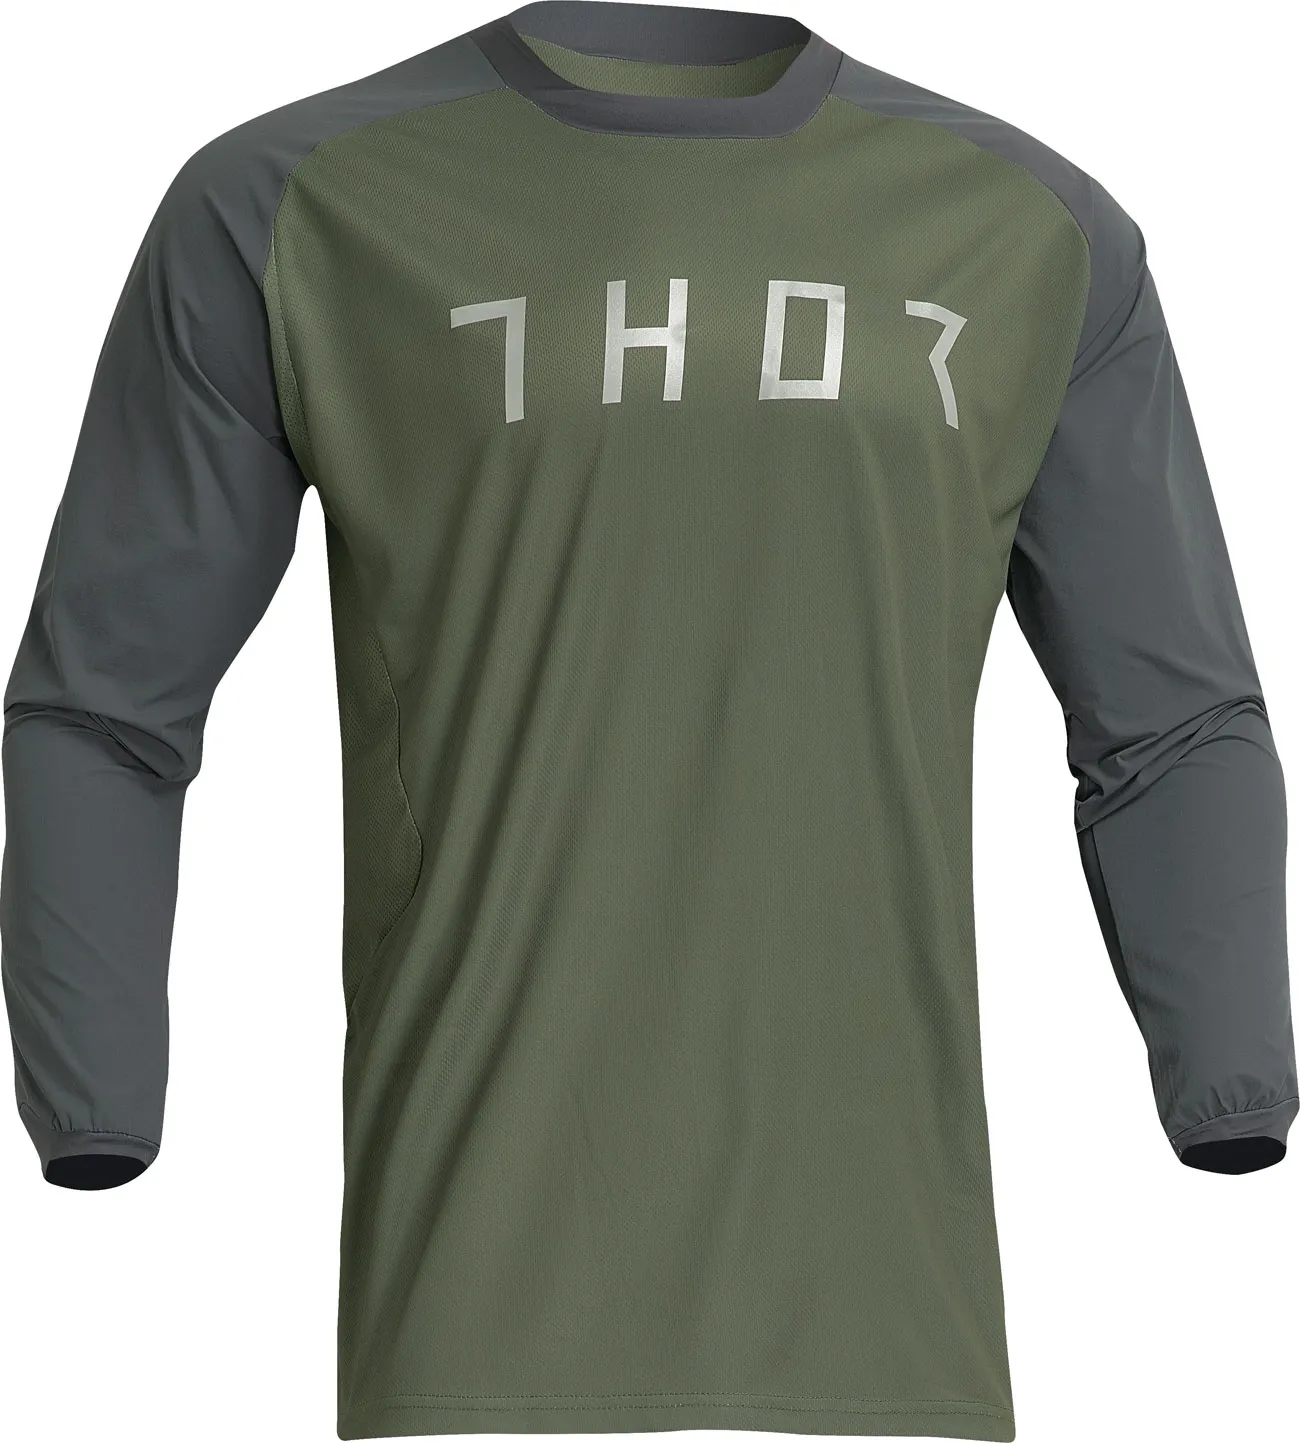 Thor Terrain, jersey - Vert Foncé/Gris Foncé - M